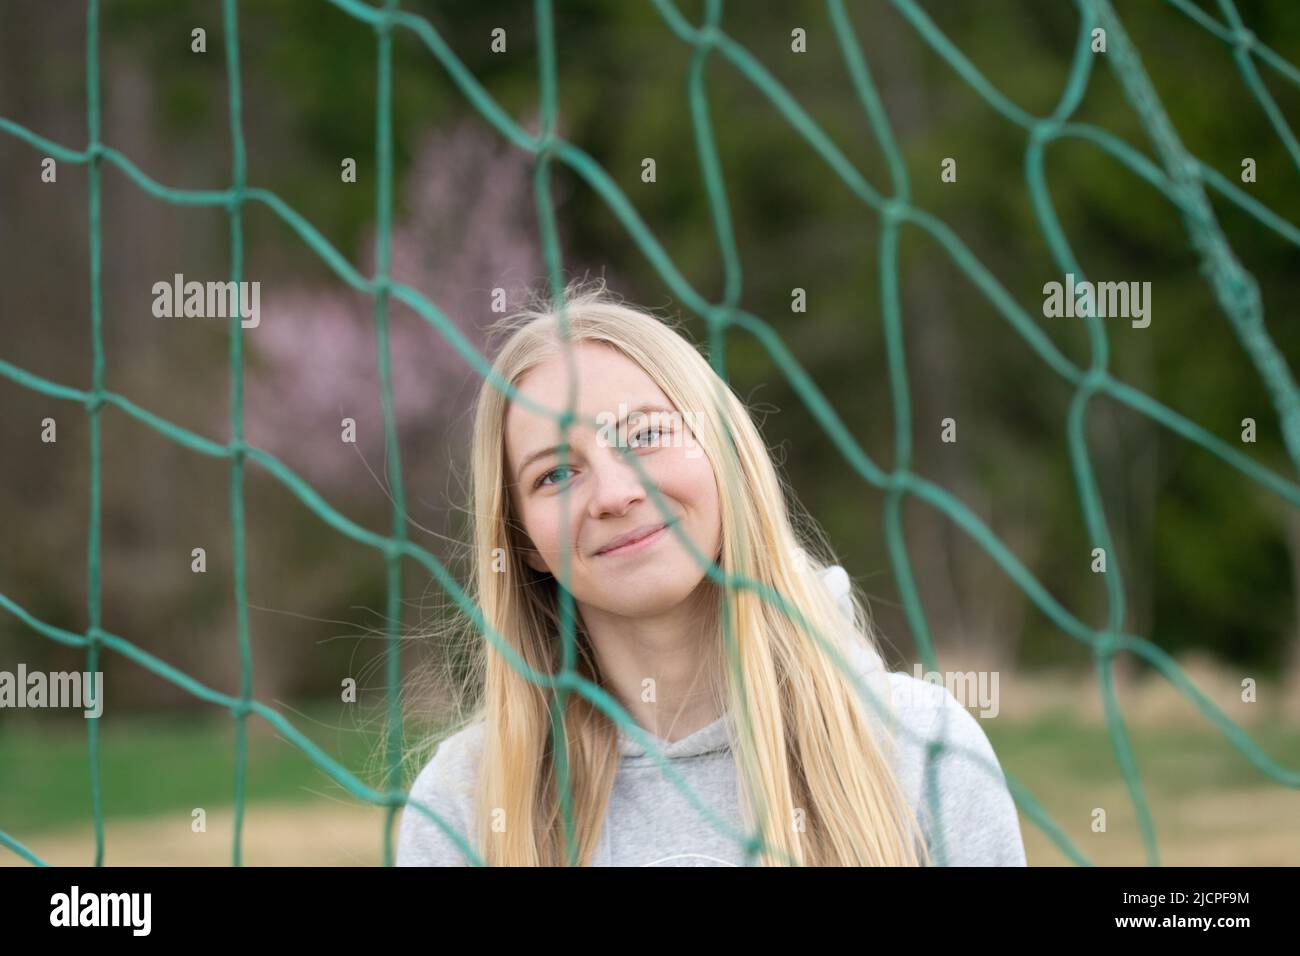 Porträt einer jungen blonden Frau durch ein Fußball- oder Fußballnetz Stockfoto